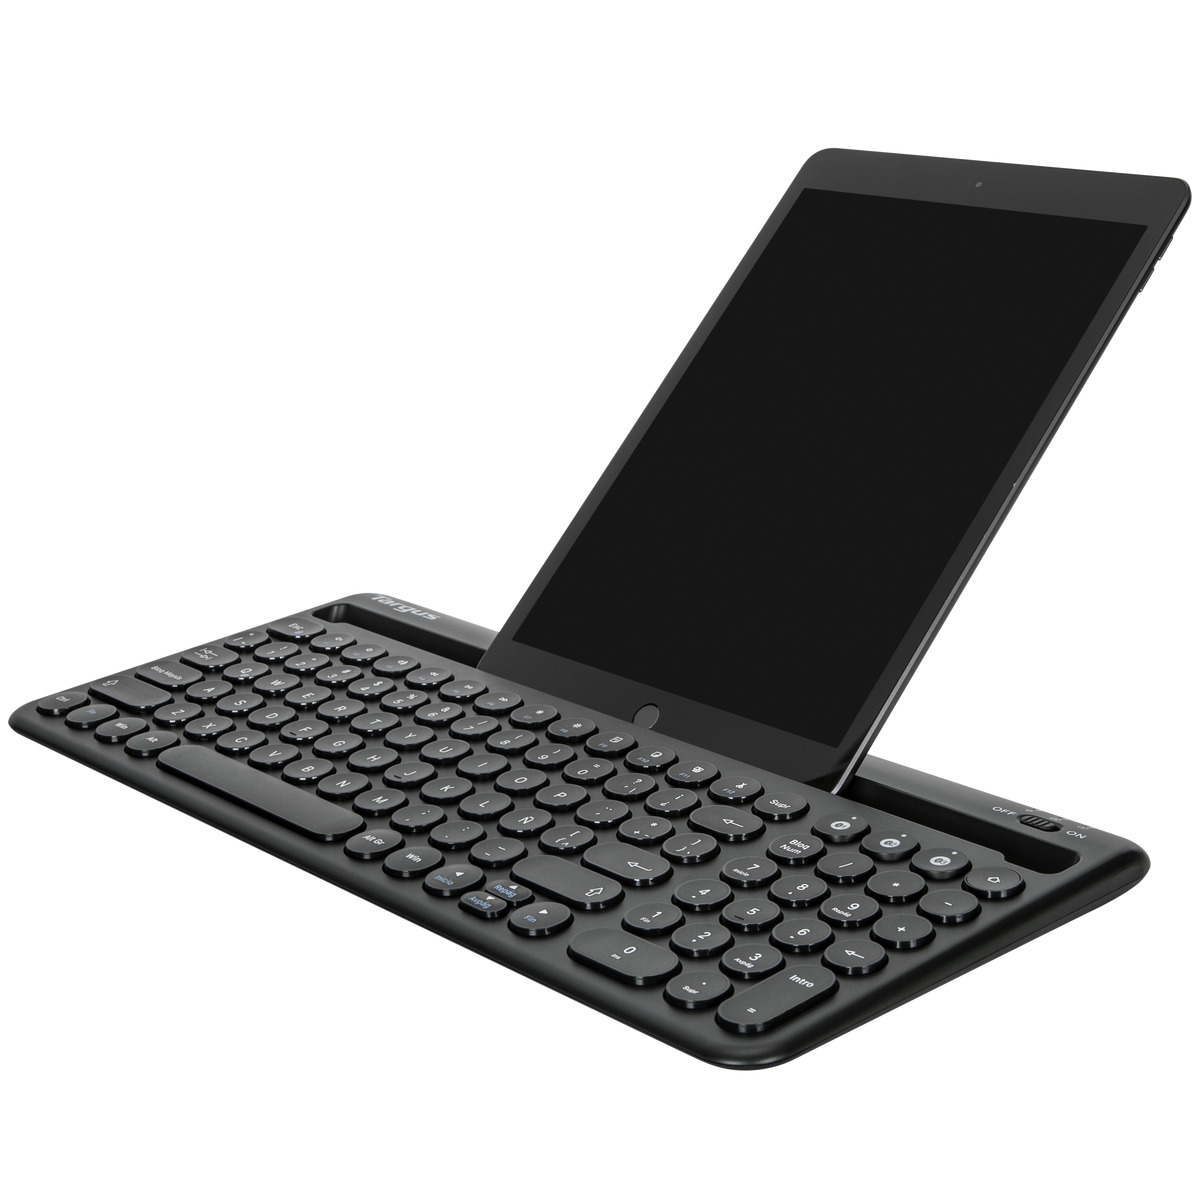 Teclado español multidispositivo con soporte para tablet